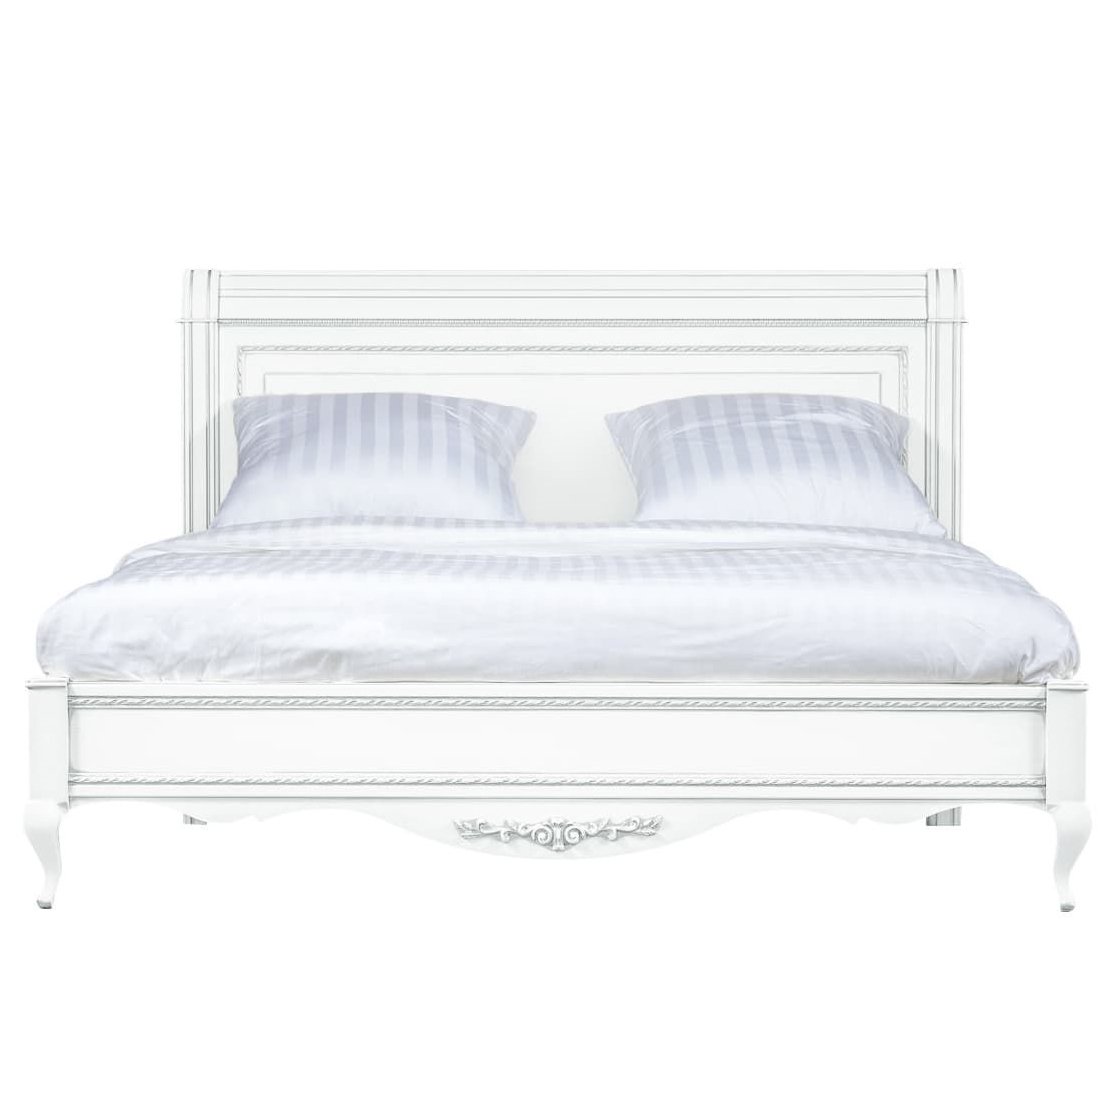 Кровать Timber Неаполь, двуспальная 160x200 см цвет: белый с серебром (T-536)T-536